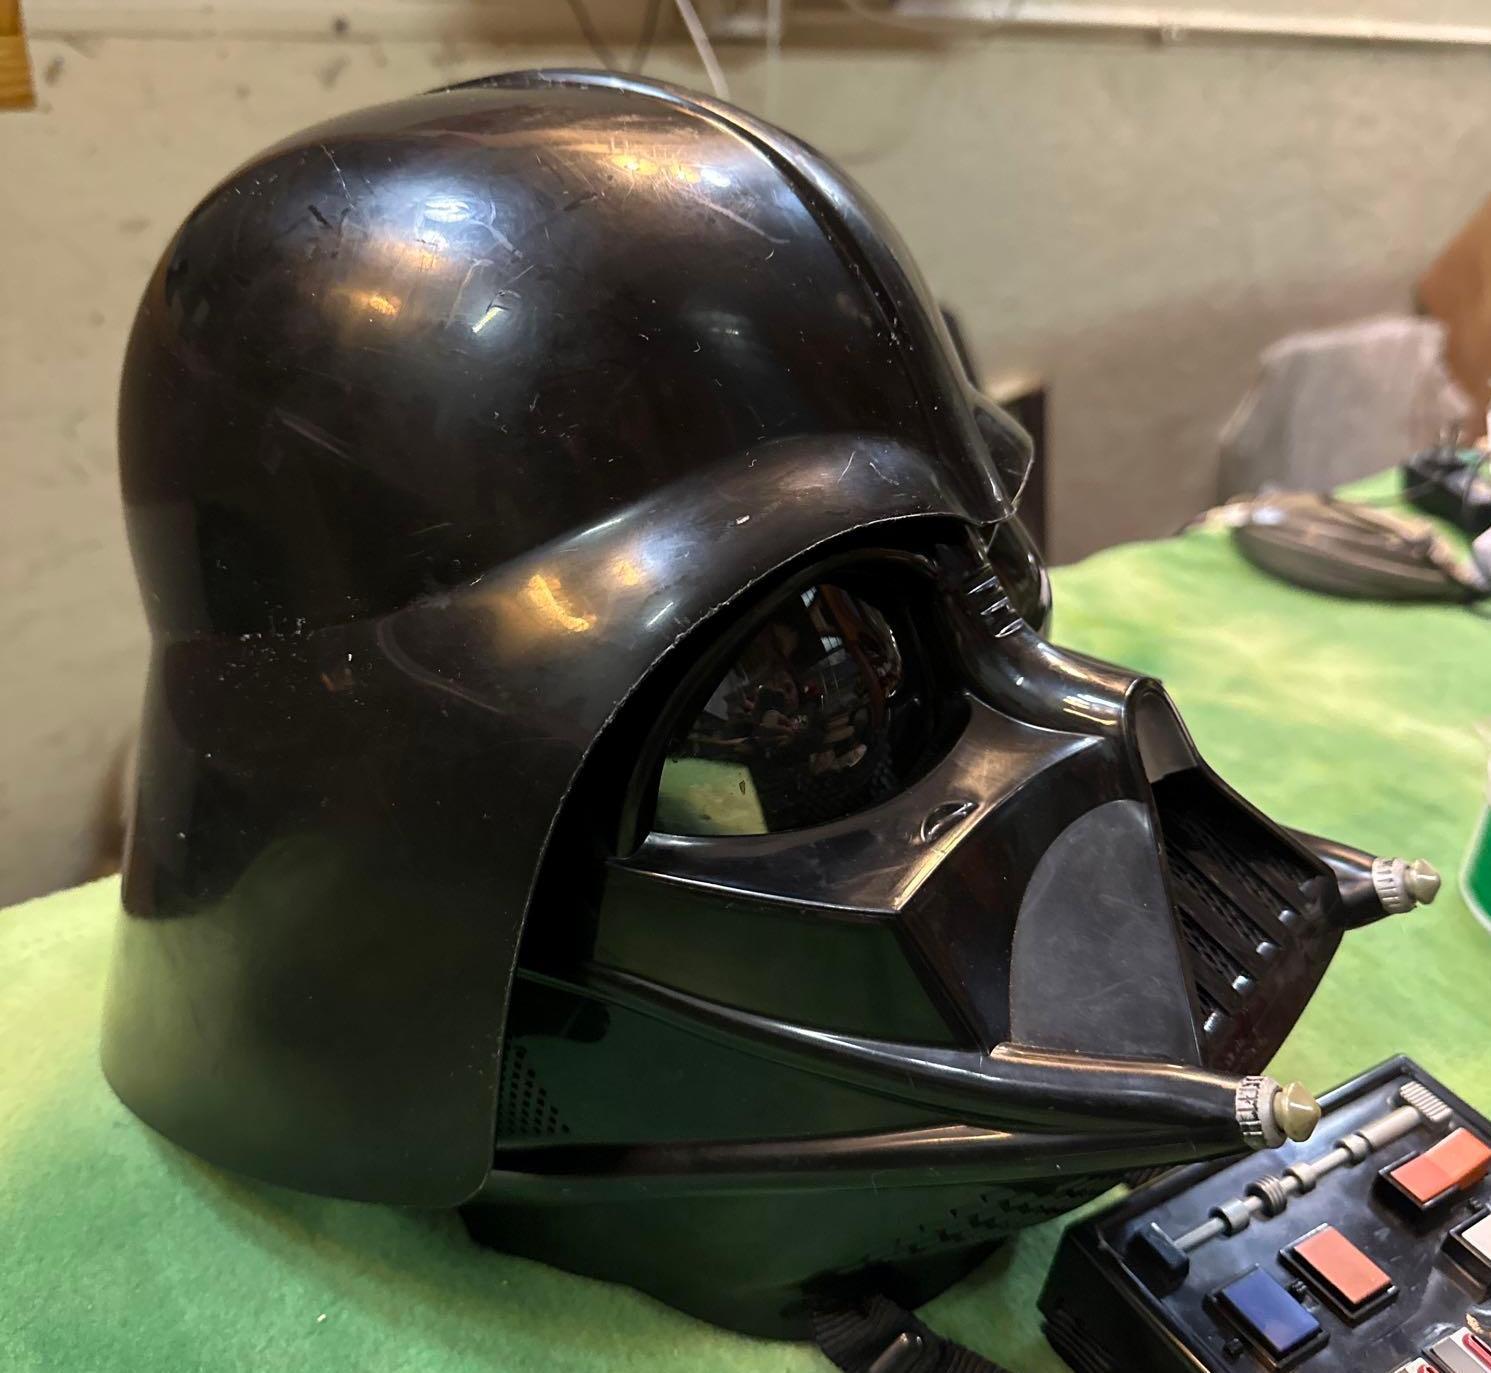 2004 Darth Vader Voice Changer Helmet Star Wars- Works